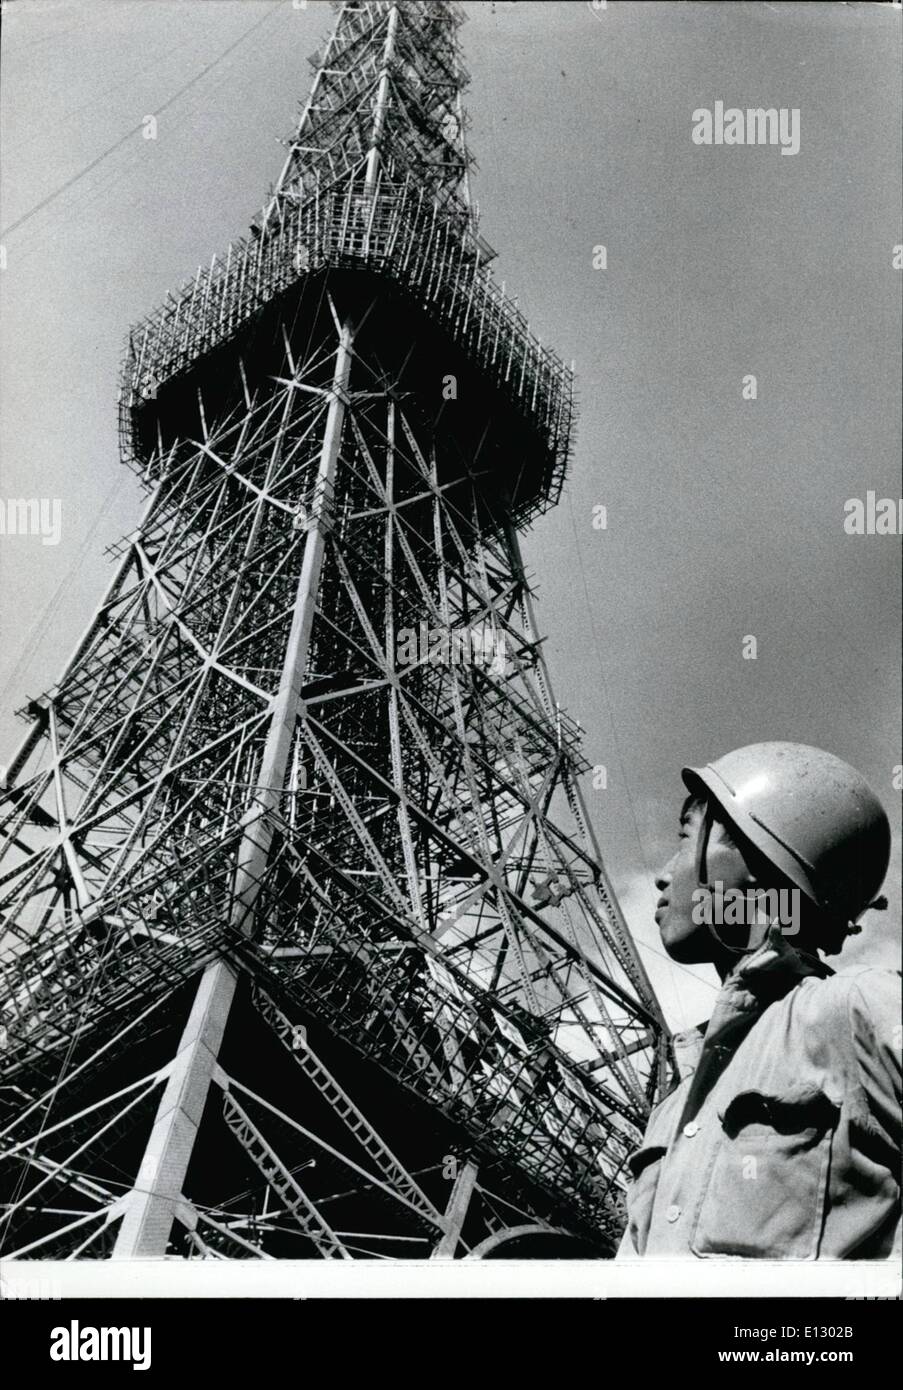 25 février 2012 - Tokyo's ''Tour Eiffel'' d'ouvrir en décembre : Tokyo's ''Tour Eiffel'' est presque terminée, et sera officiellement ouverte en décembre par le Prince héritier Akihito. Le tour de 1 082 pieds, 40 pieds plus haut que le célèbre monument de Paris sera le quatrième satellite station de transmission. Une énorme série de studios de télévision, et d'un musée scientifique est en cours de construction dans la zone située sous la tour à l'intérieur des quatre pattes de support. La photo montre presque terminé la Tour de Tokyo montrant les 1er et 2ème plates-formes. Banque D'Images